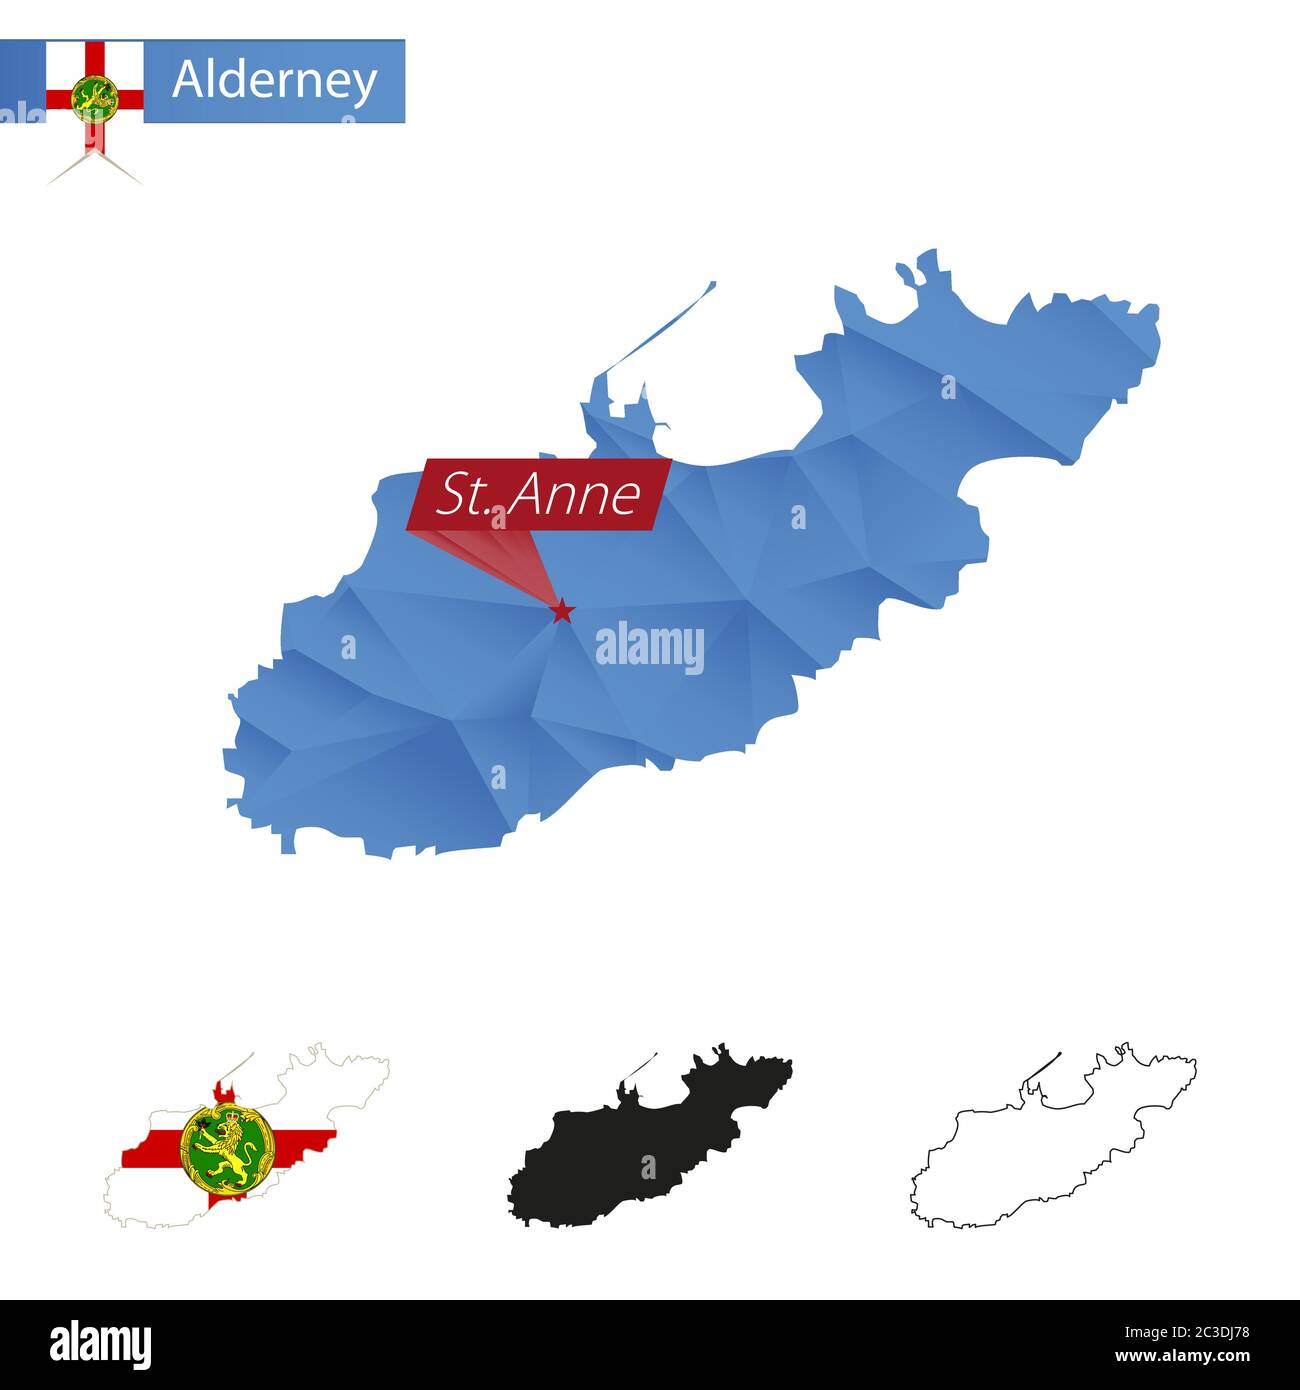 Mappa blu di Alderney basso Poly con la capitale Sant'Anna, quattro versioni della mappa. Illustrazione vettoriale. Illustrazione Vettoriale